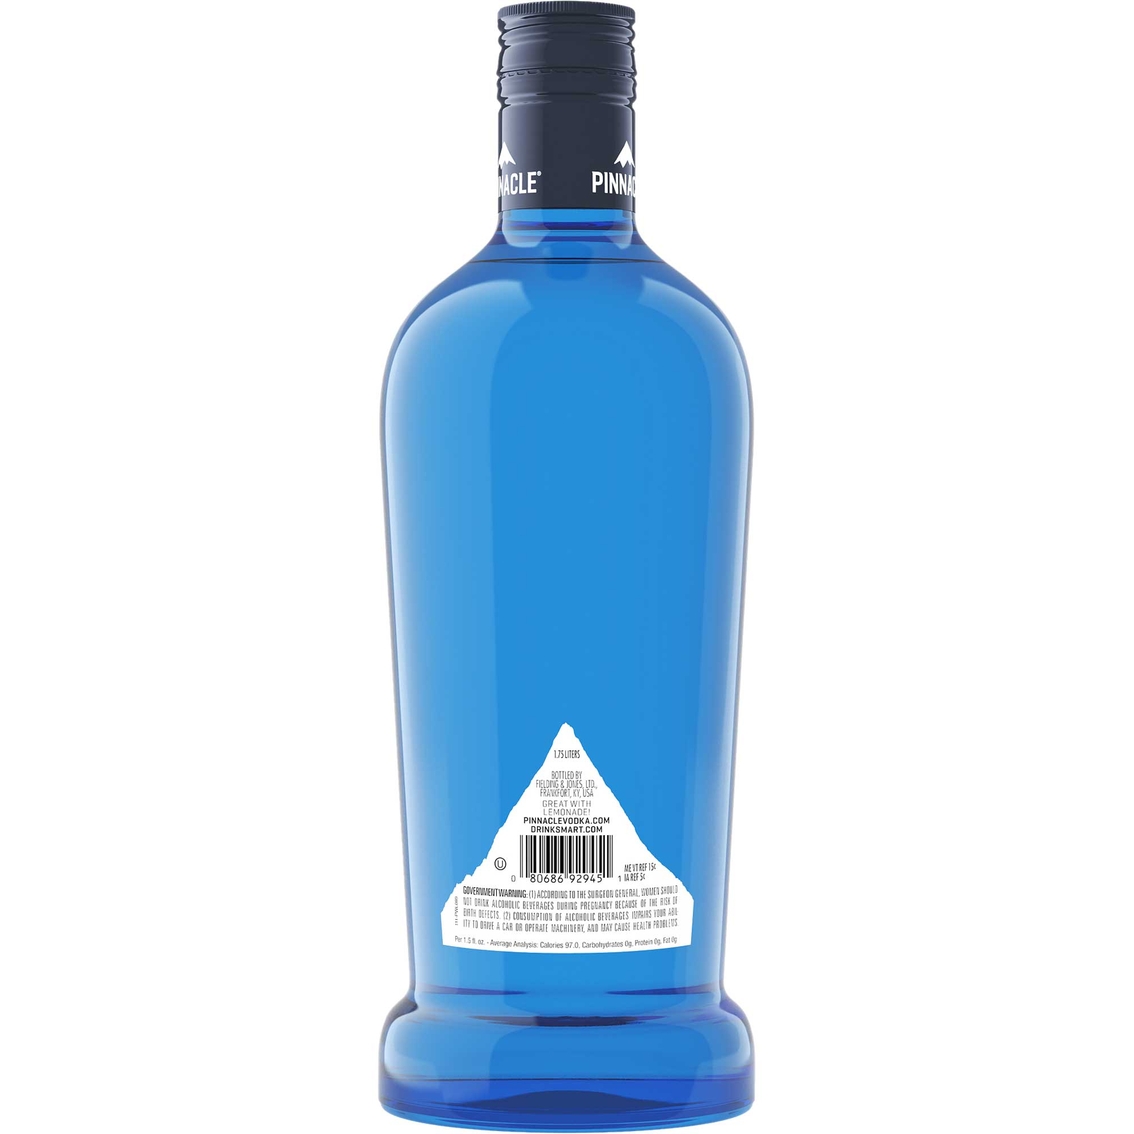 Pinnacle Vodka 1.75L - Image 2 of 2